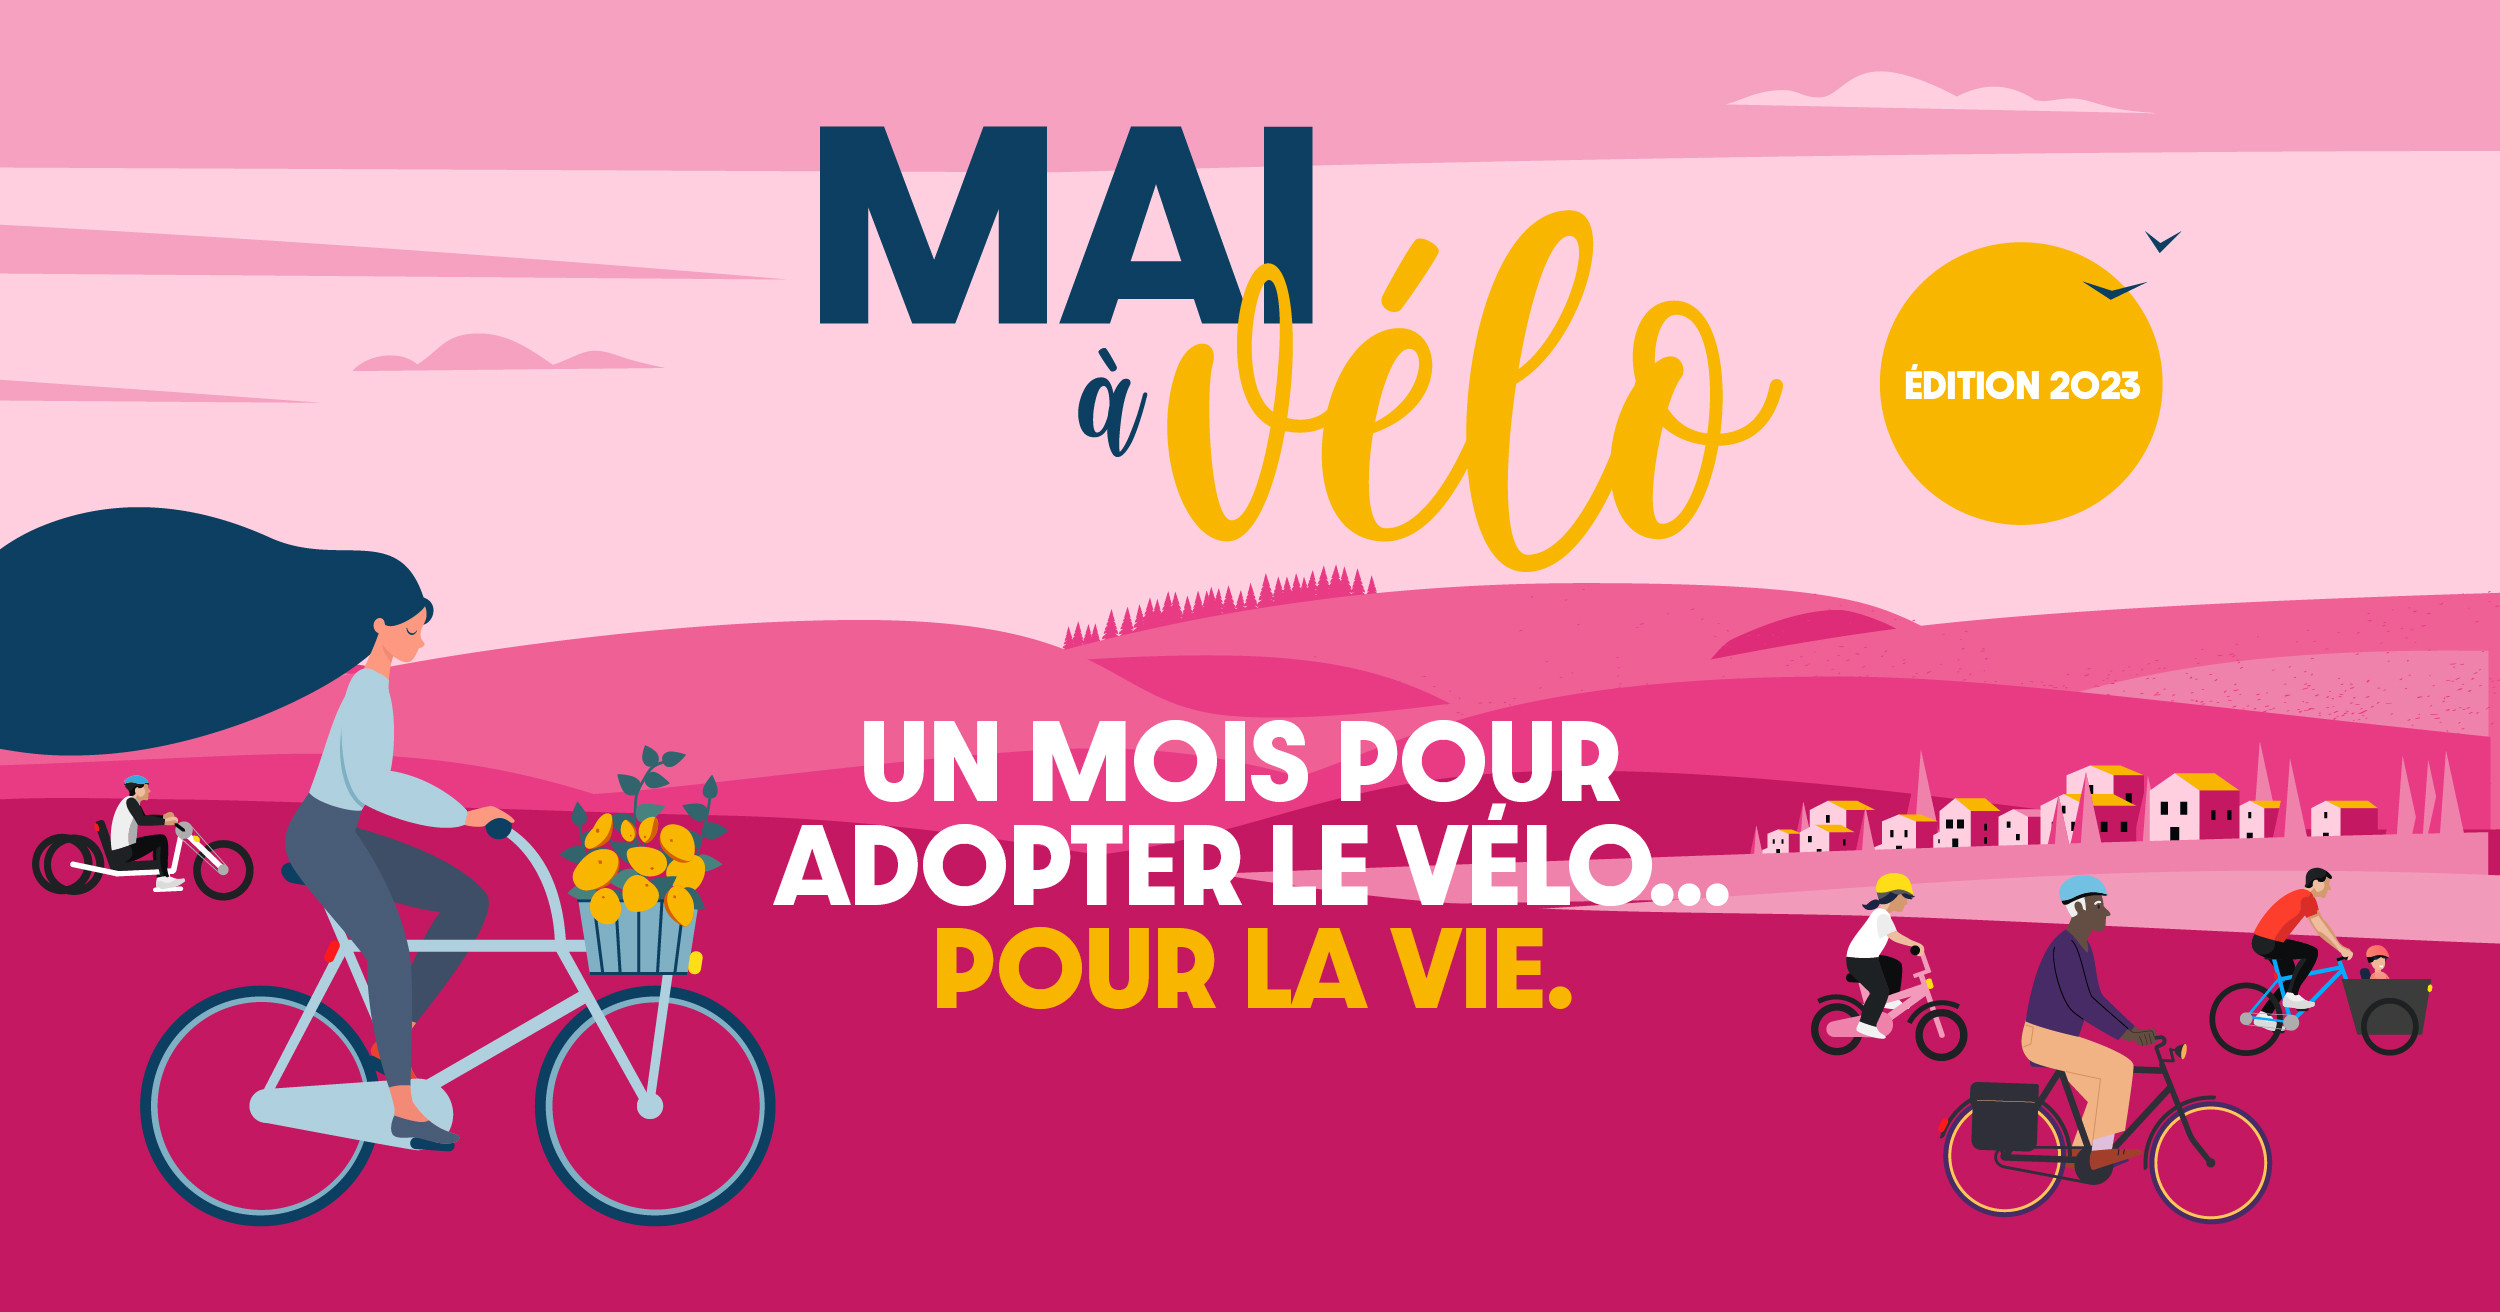 Un mois pour adopter le vélo pour la vie